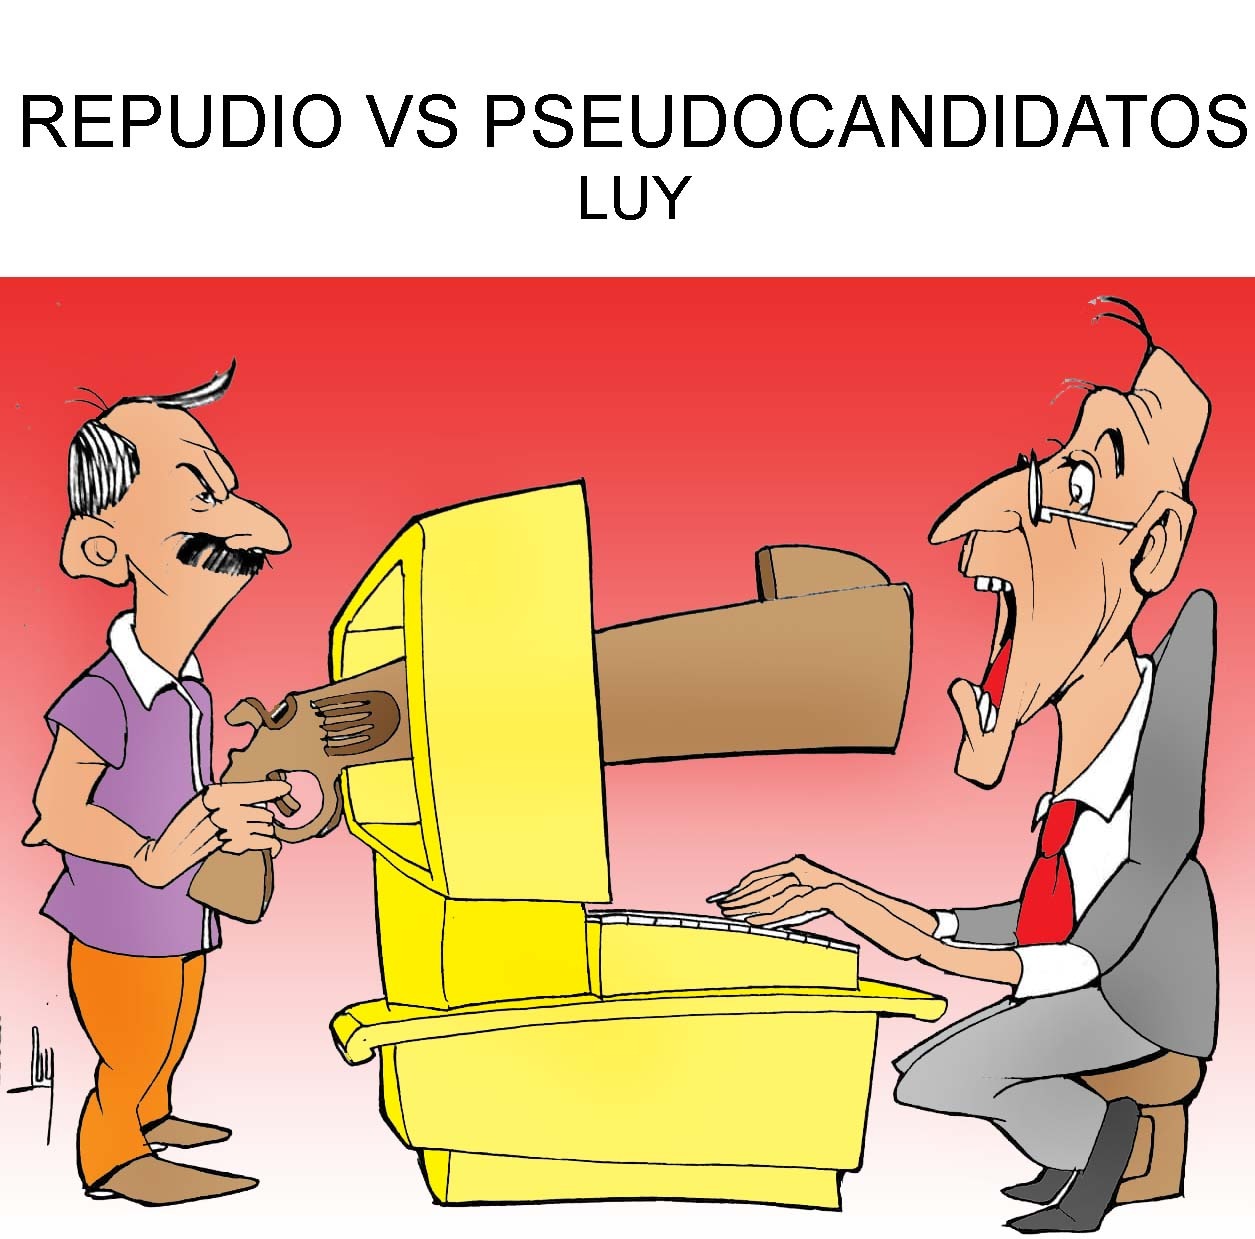 Repudio vs pseudocandidatos por Luy